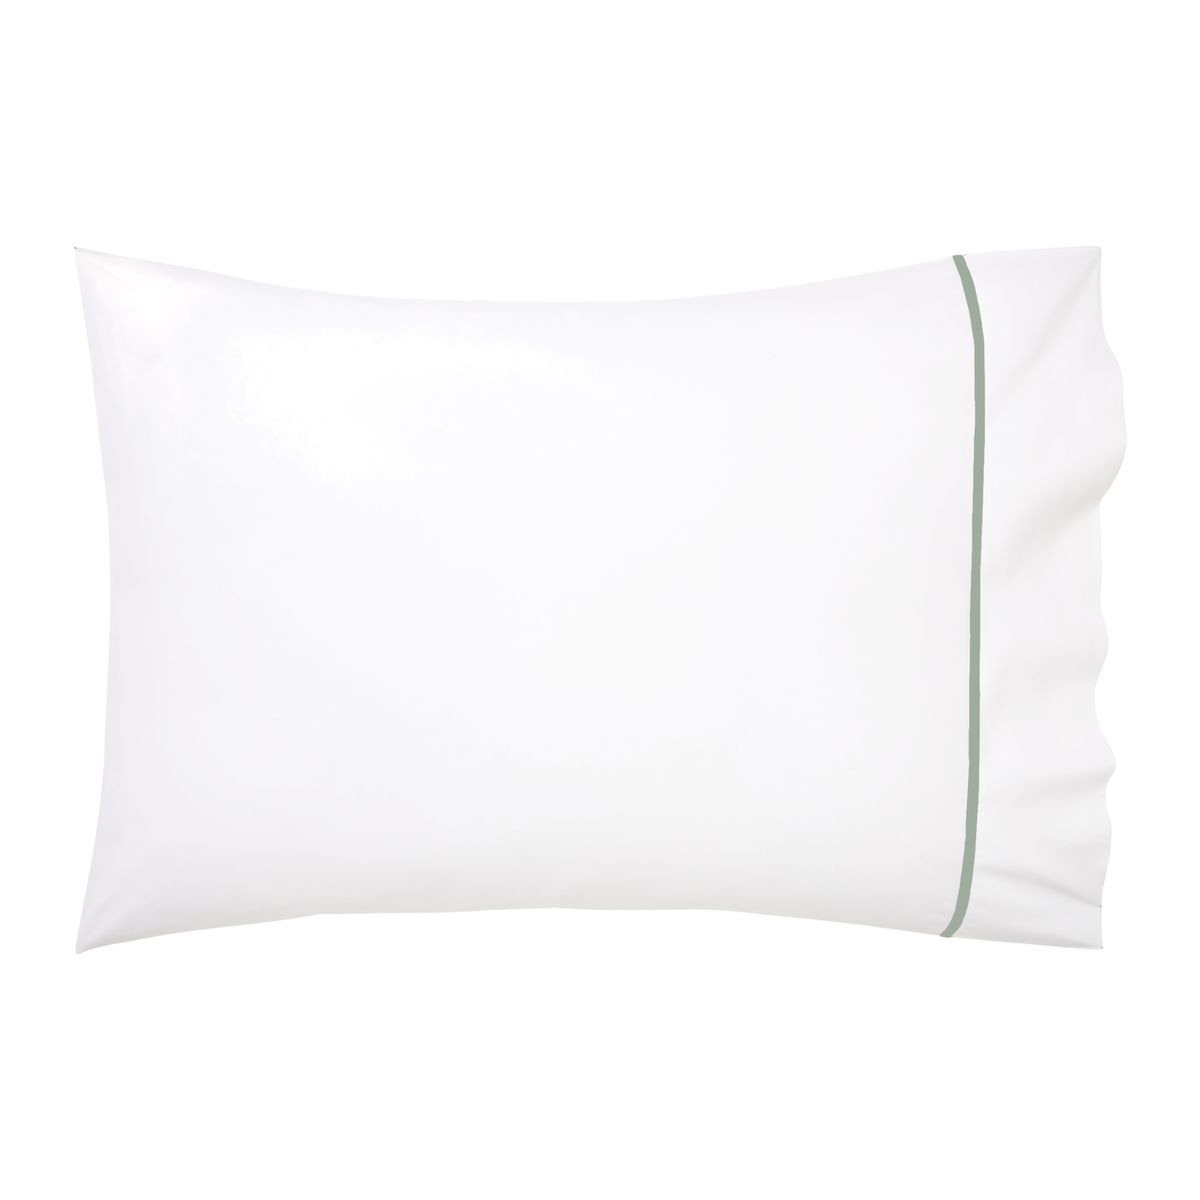 Pillowcase of Yves Delorme Athena Bedding in Veronese Color